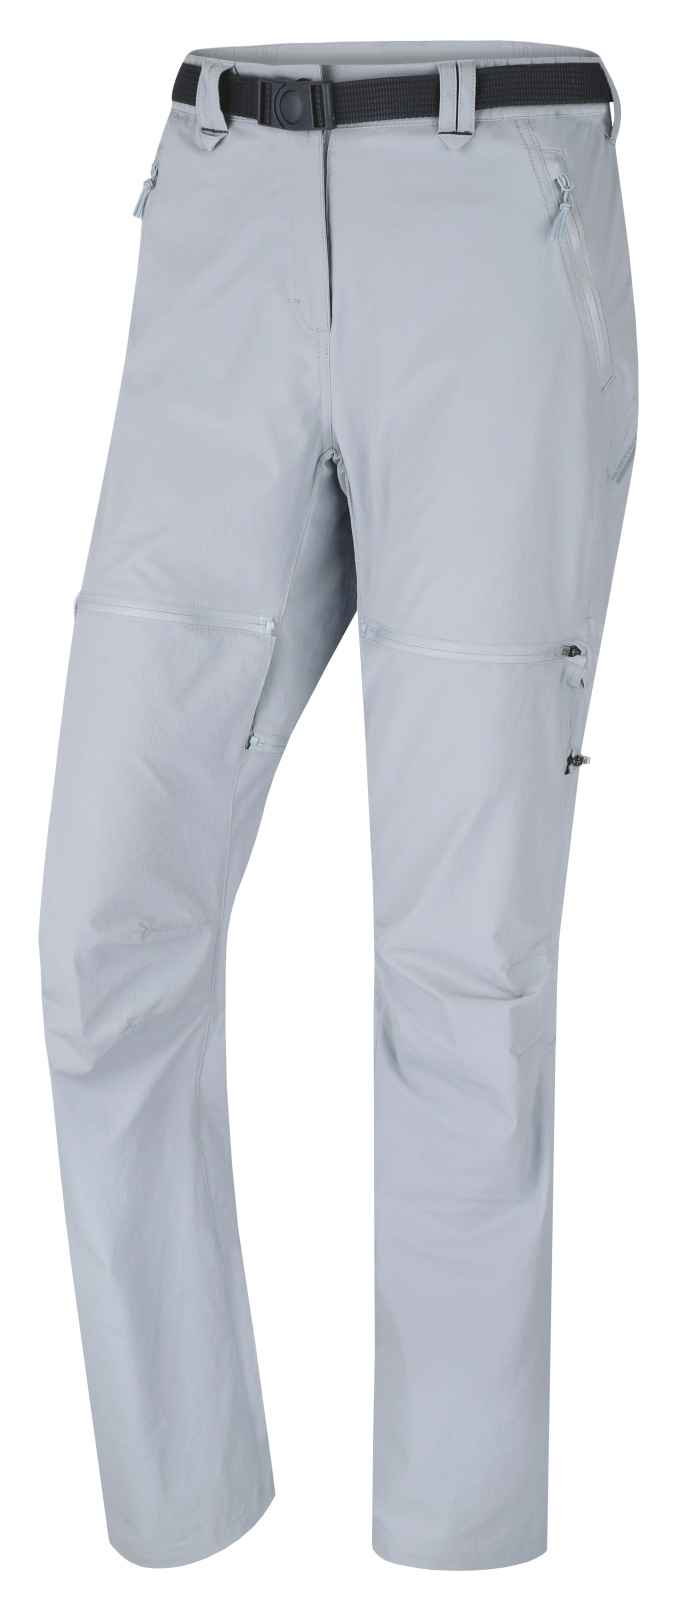 Husky Dámské outdoor kalhoty Pilon L light grey Velikost: M dámské kalhoty